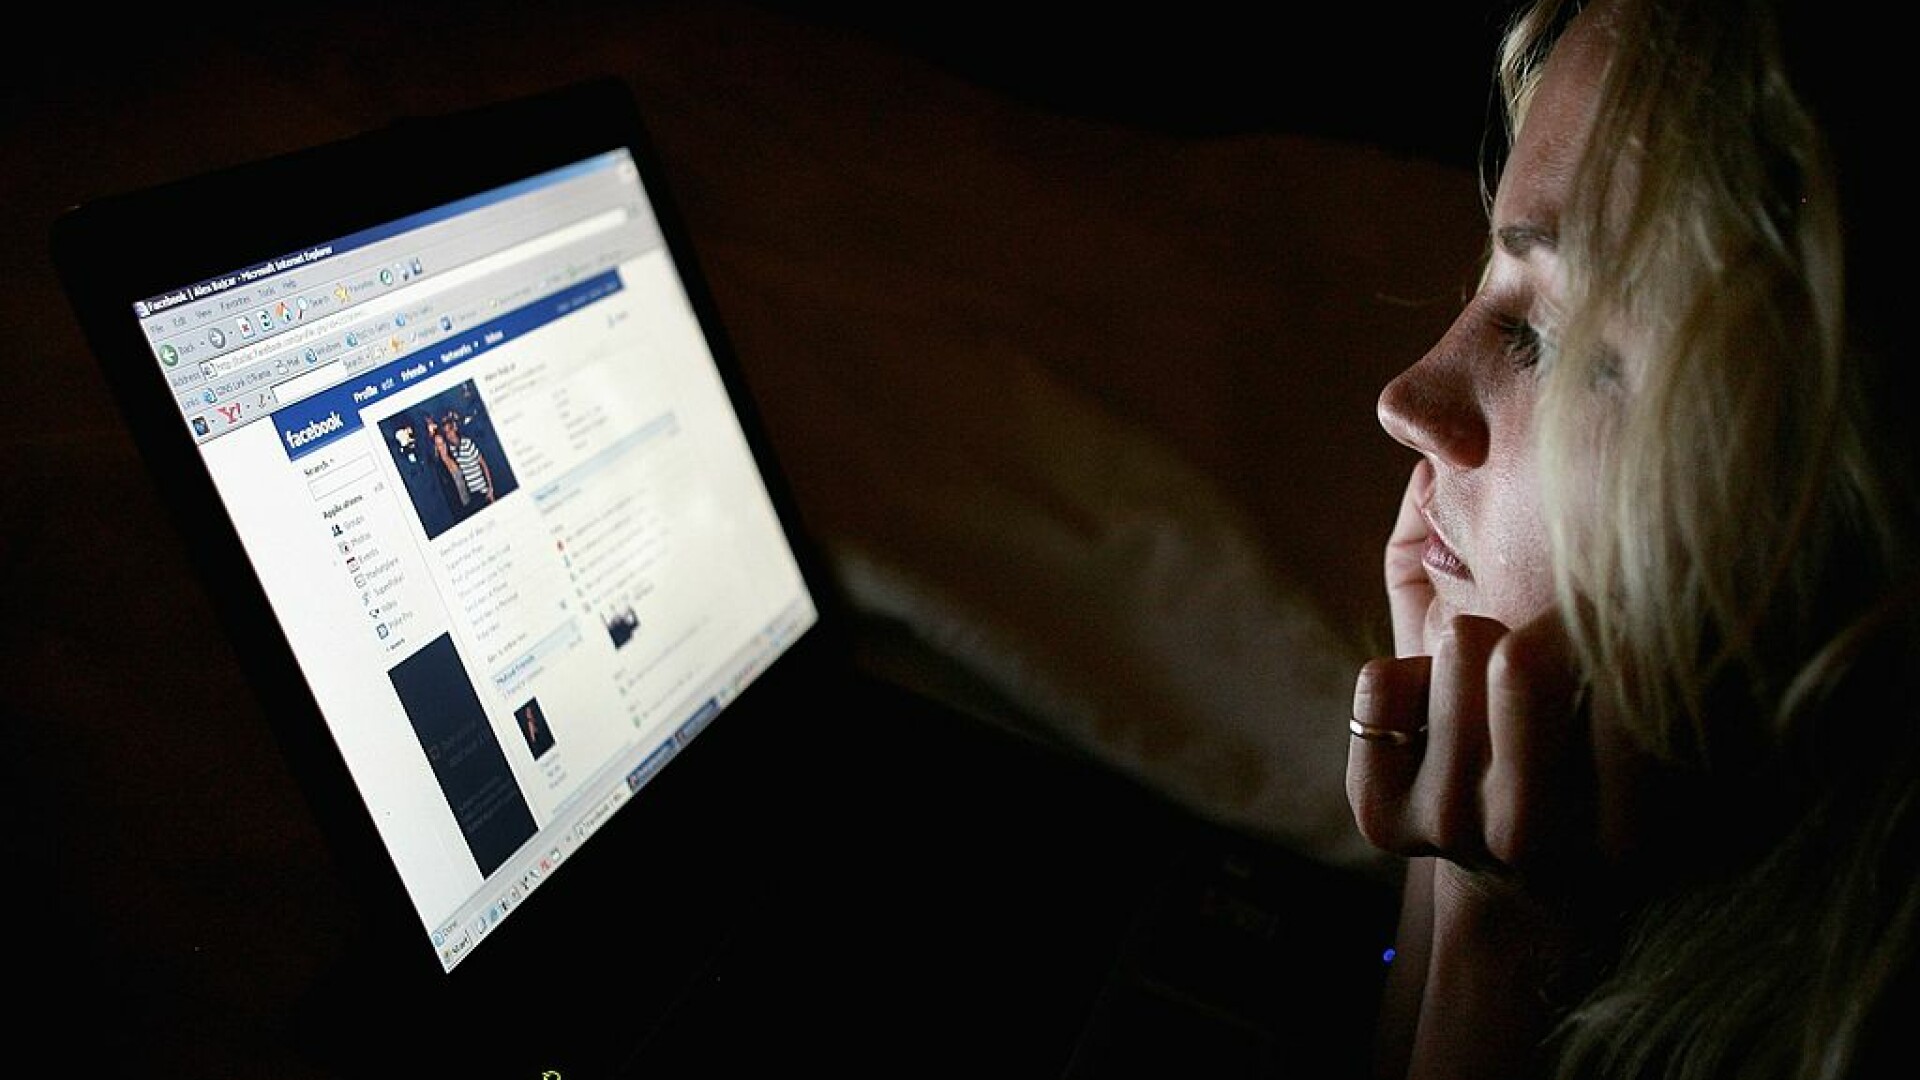 Bărbat din Iași condamnat după ce și-a jignit sora pe Facebook. A fost dat în judecată și de frate, tot pentru o postare